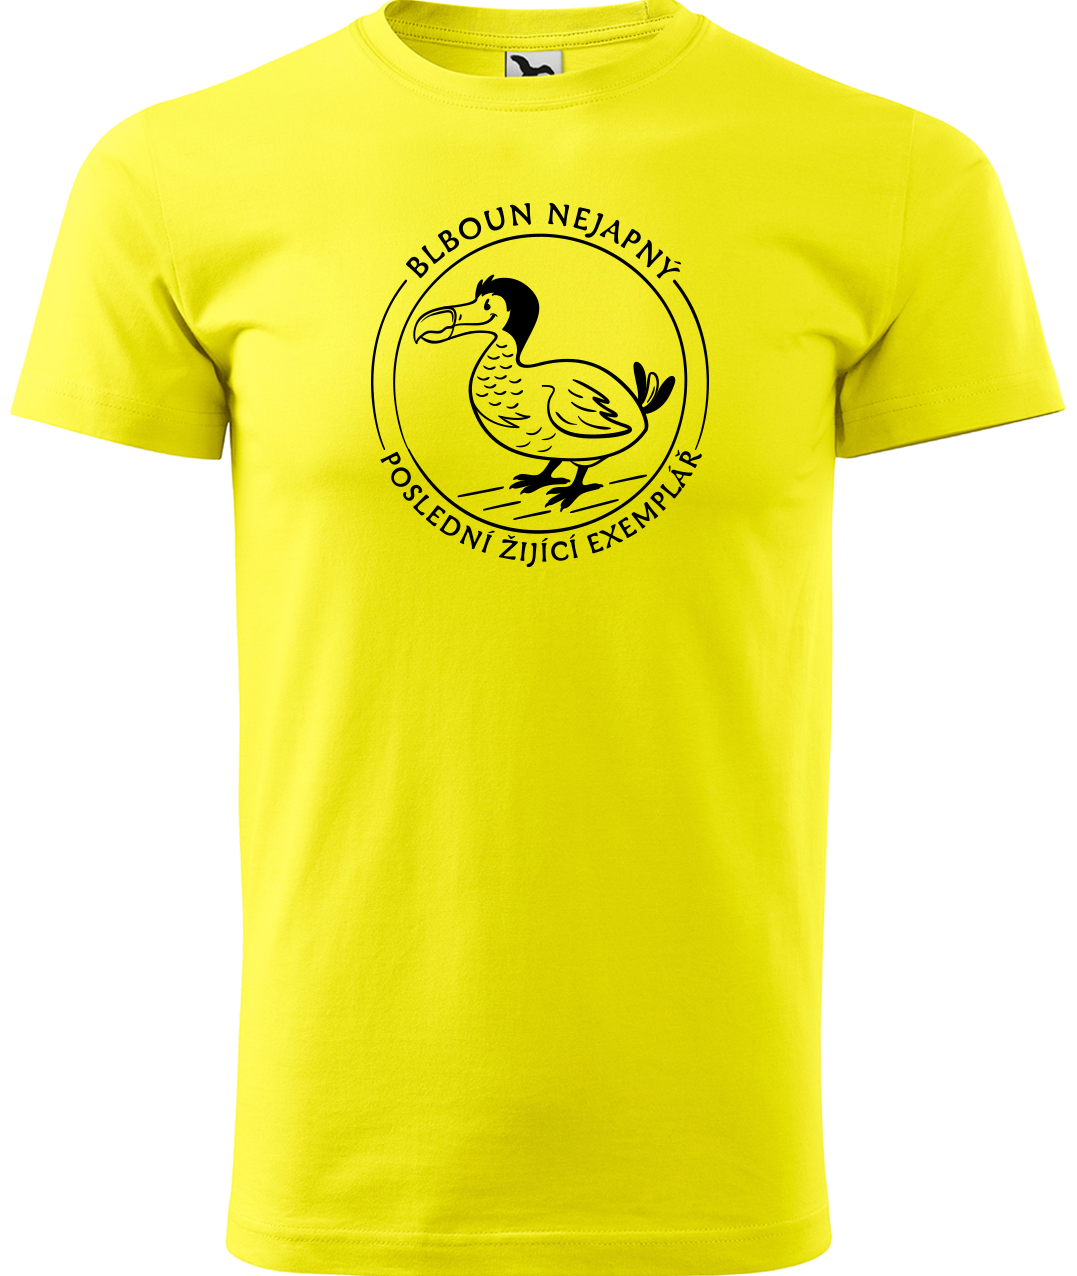 Vtipné tričko - Blboun nejapný Velikost: S, Barva: Žlutá (04)